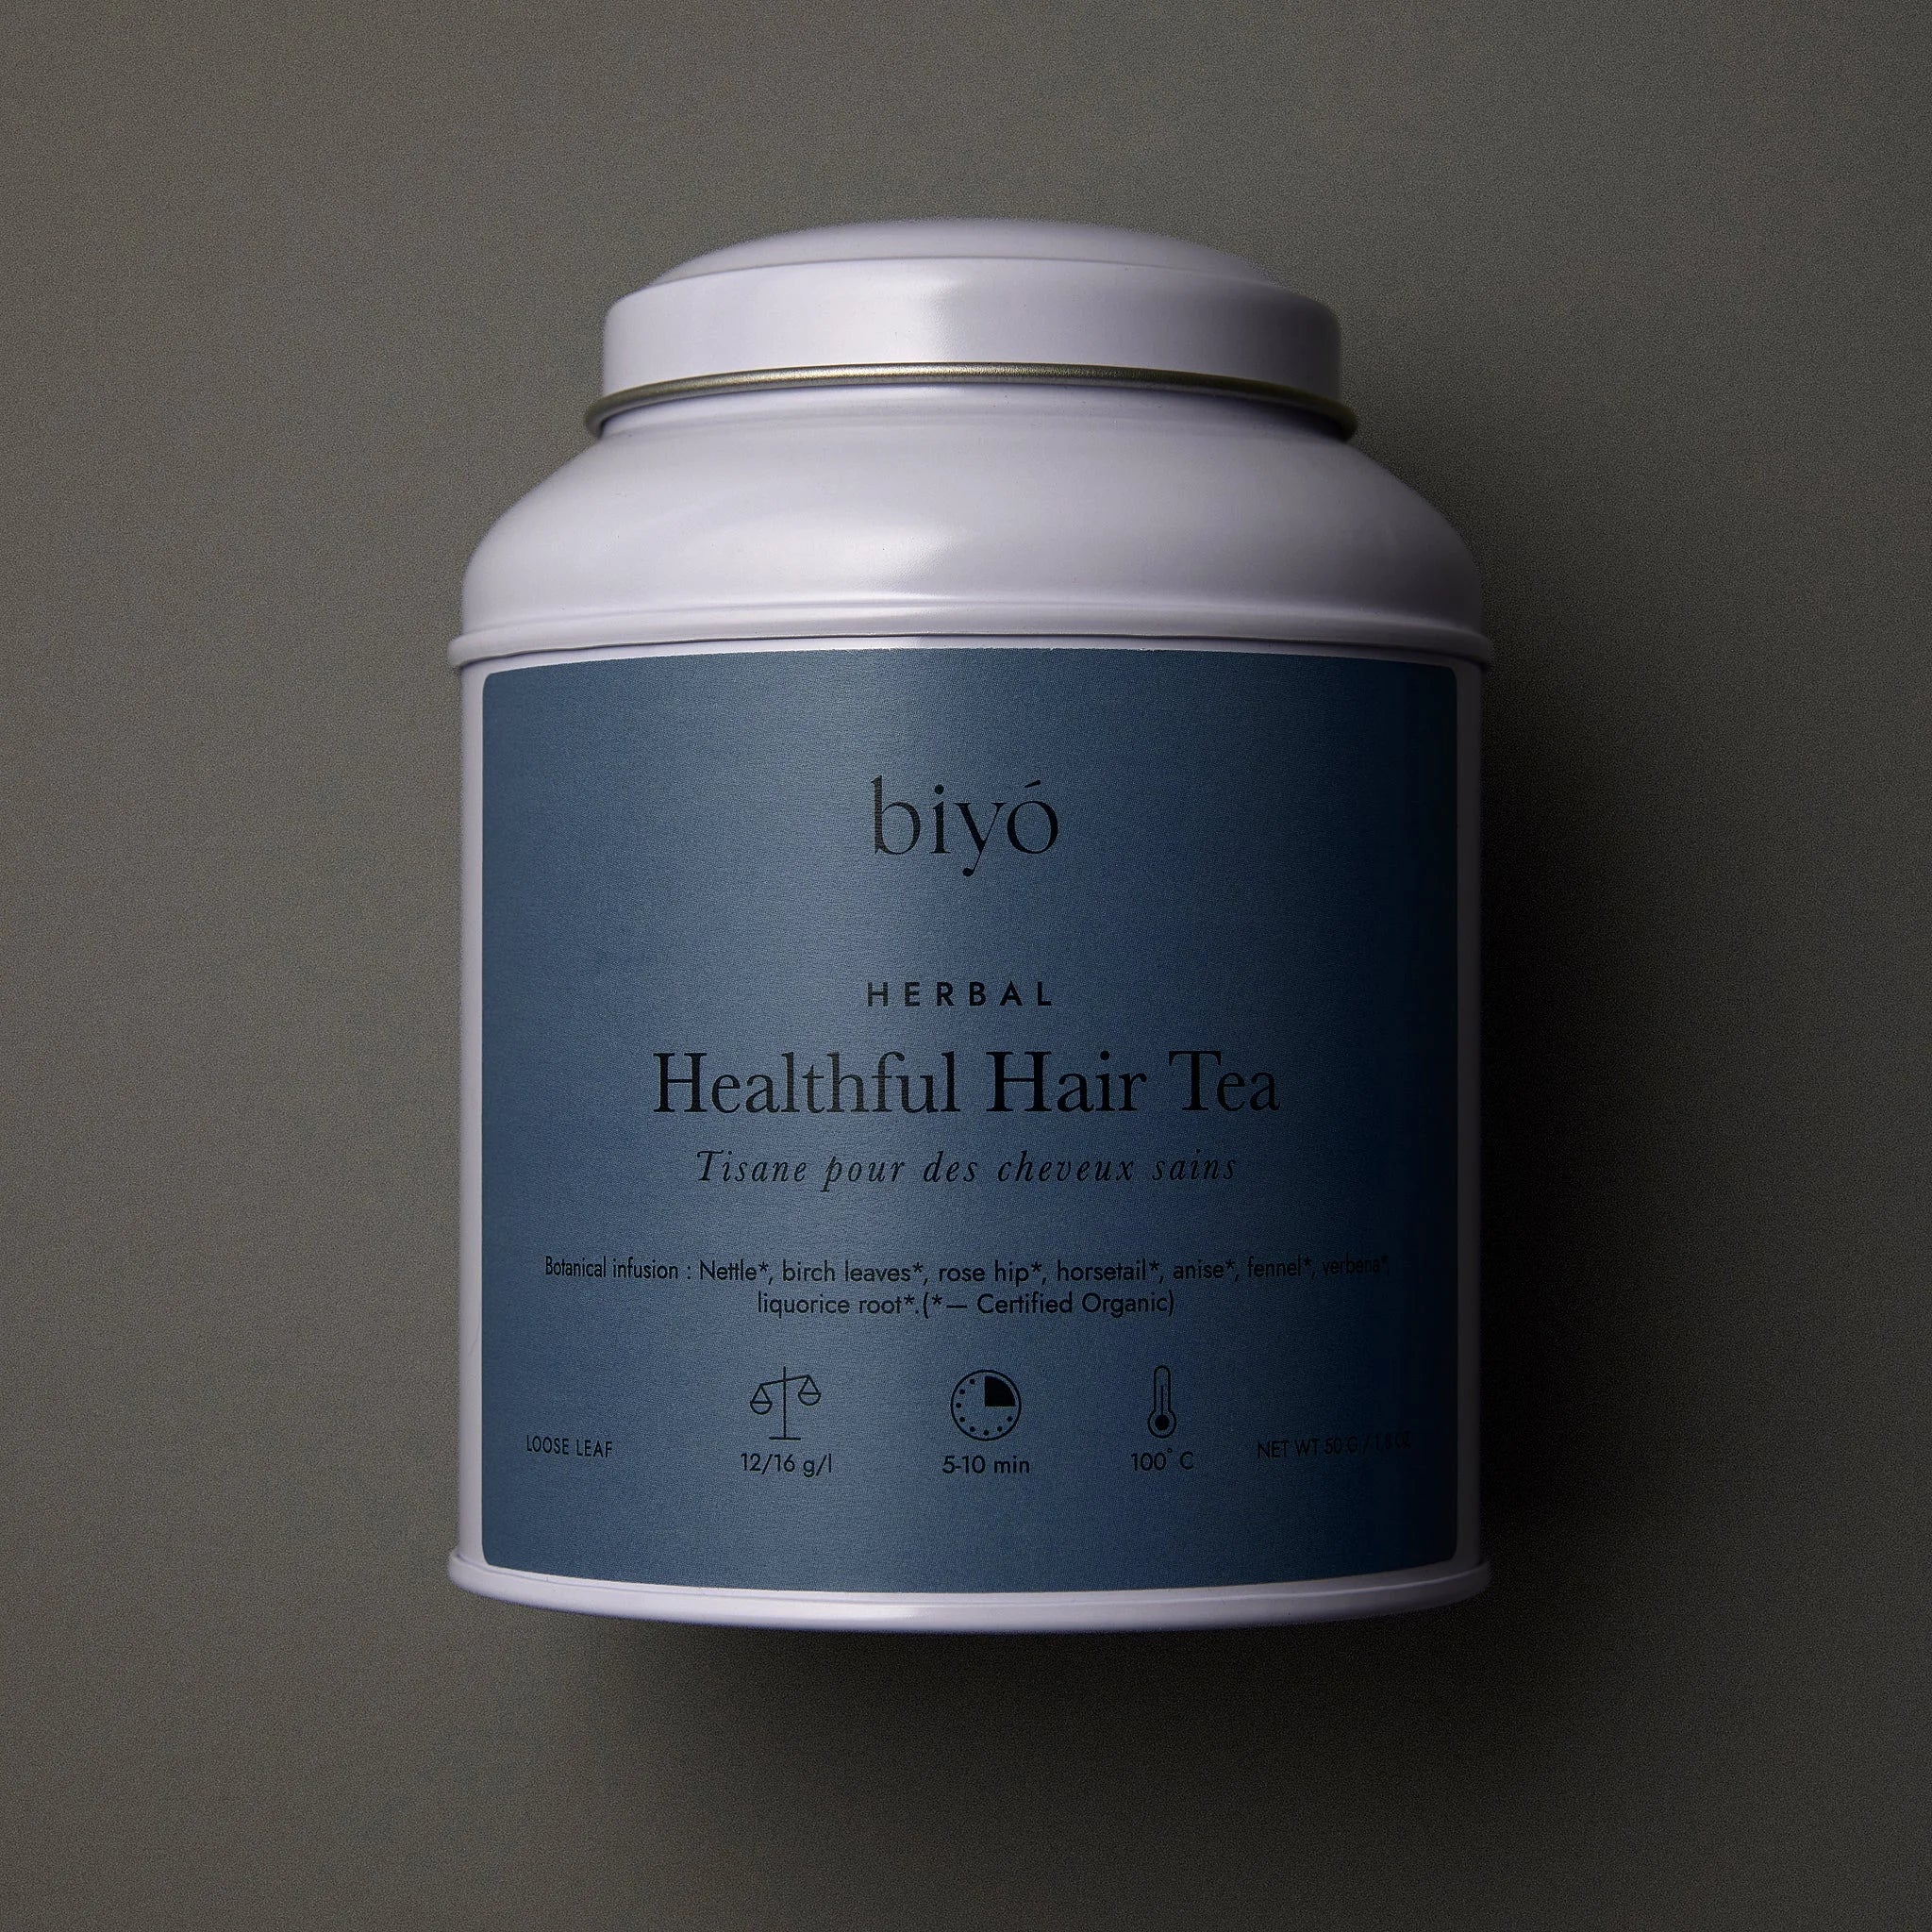 Herbal Healthful Hair Tea